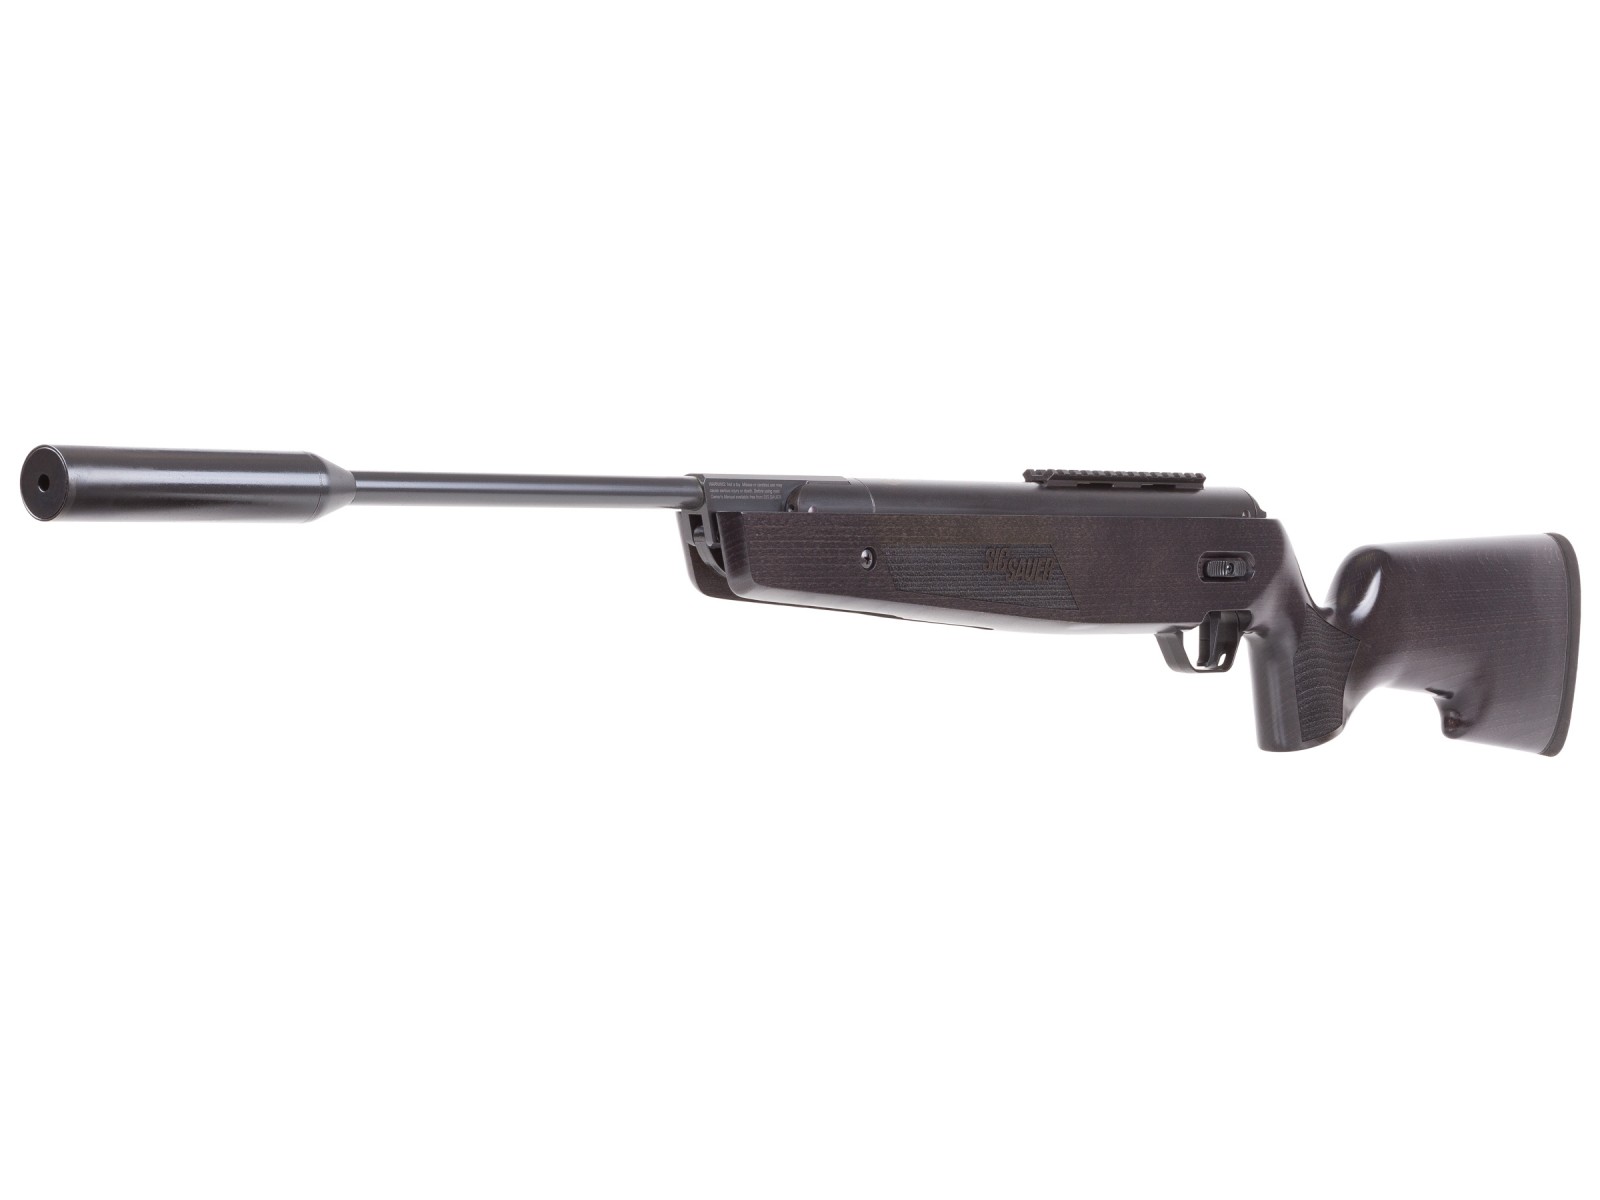 SIG Sauer ASP20 Gas-Piston Breakbarrel Air Rifle, Beech